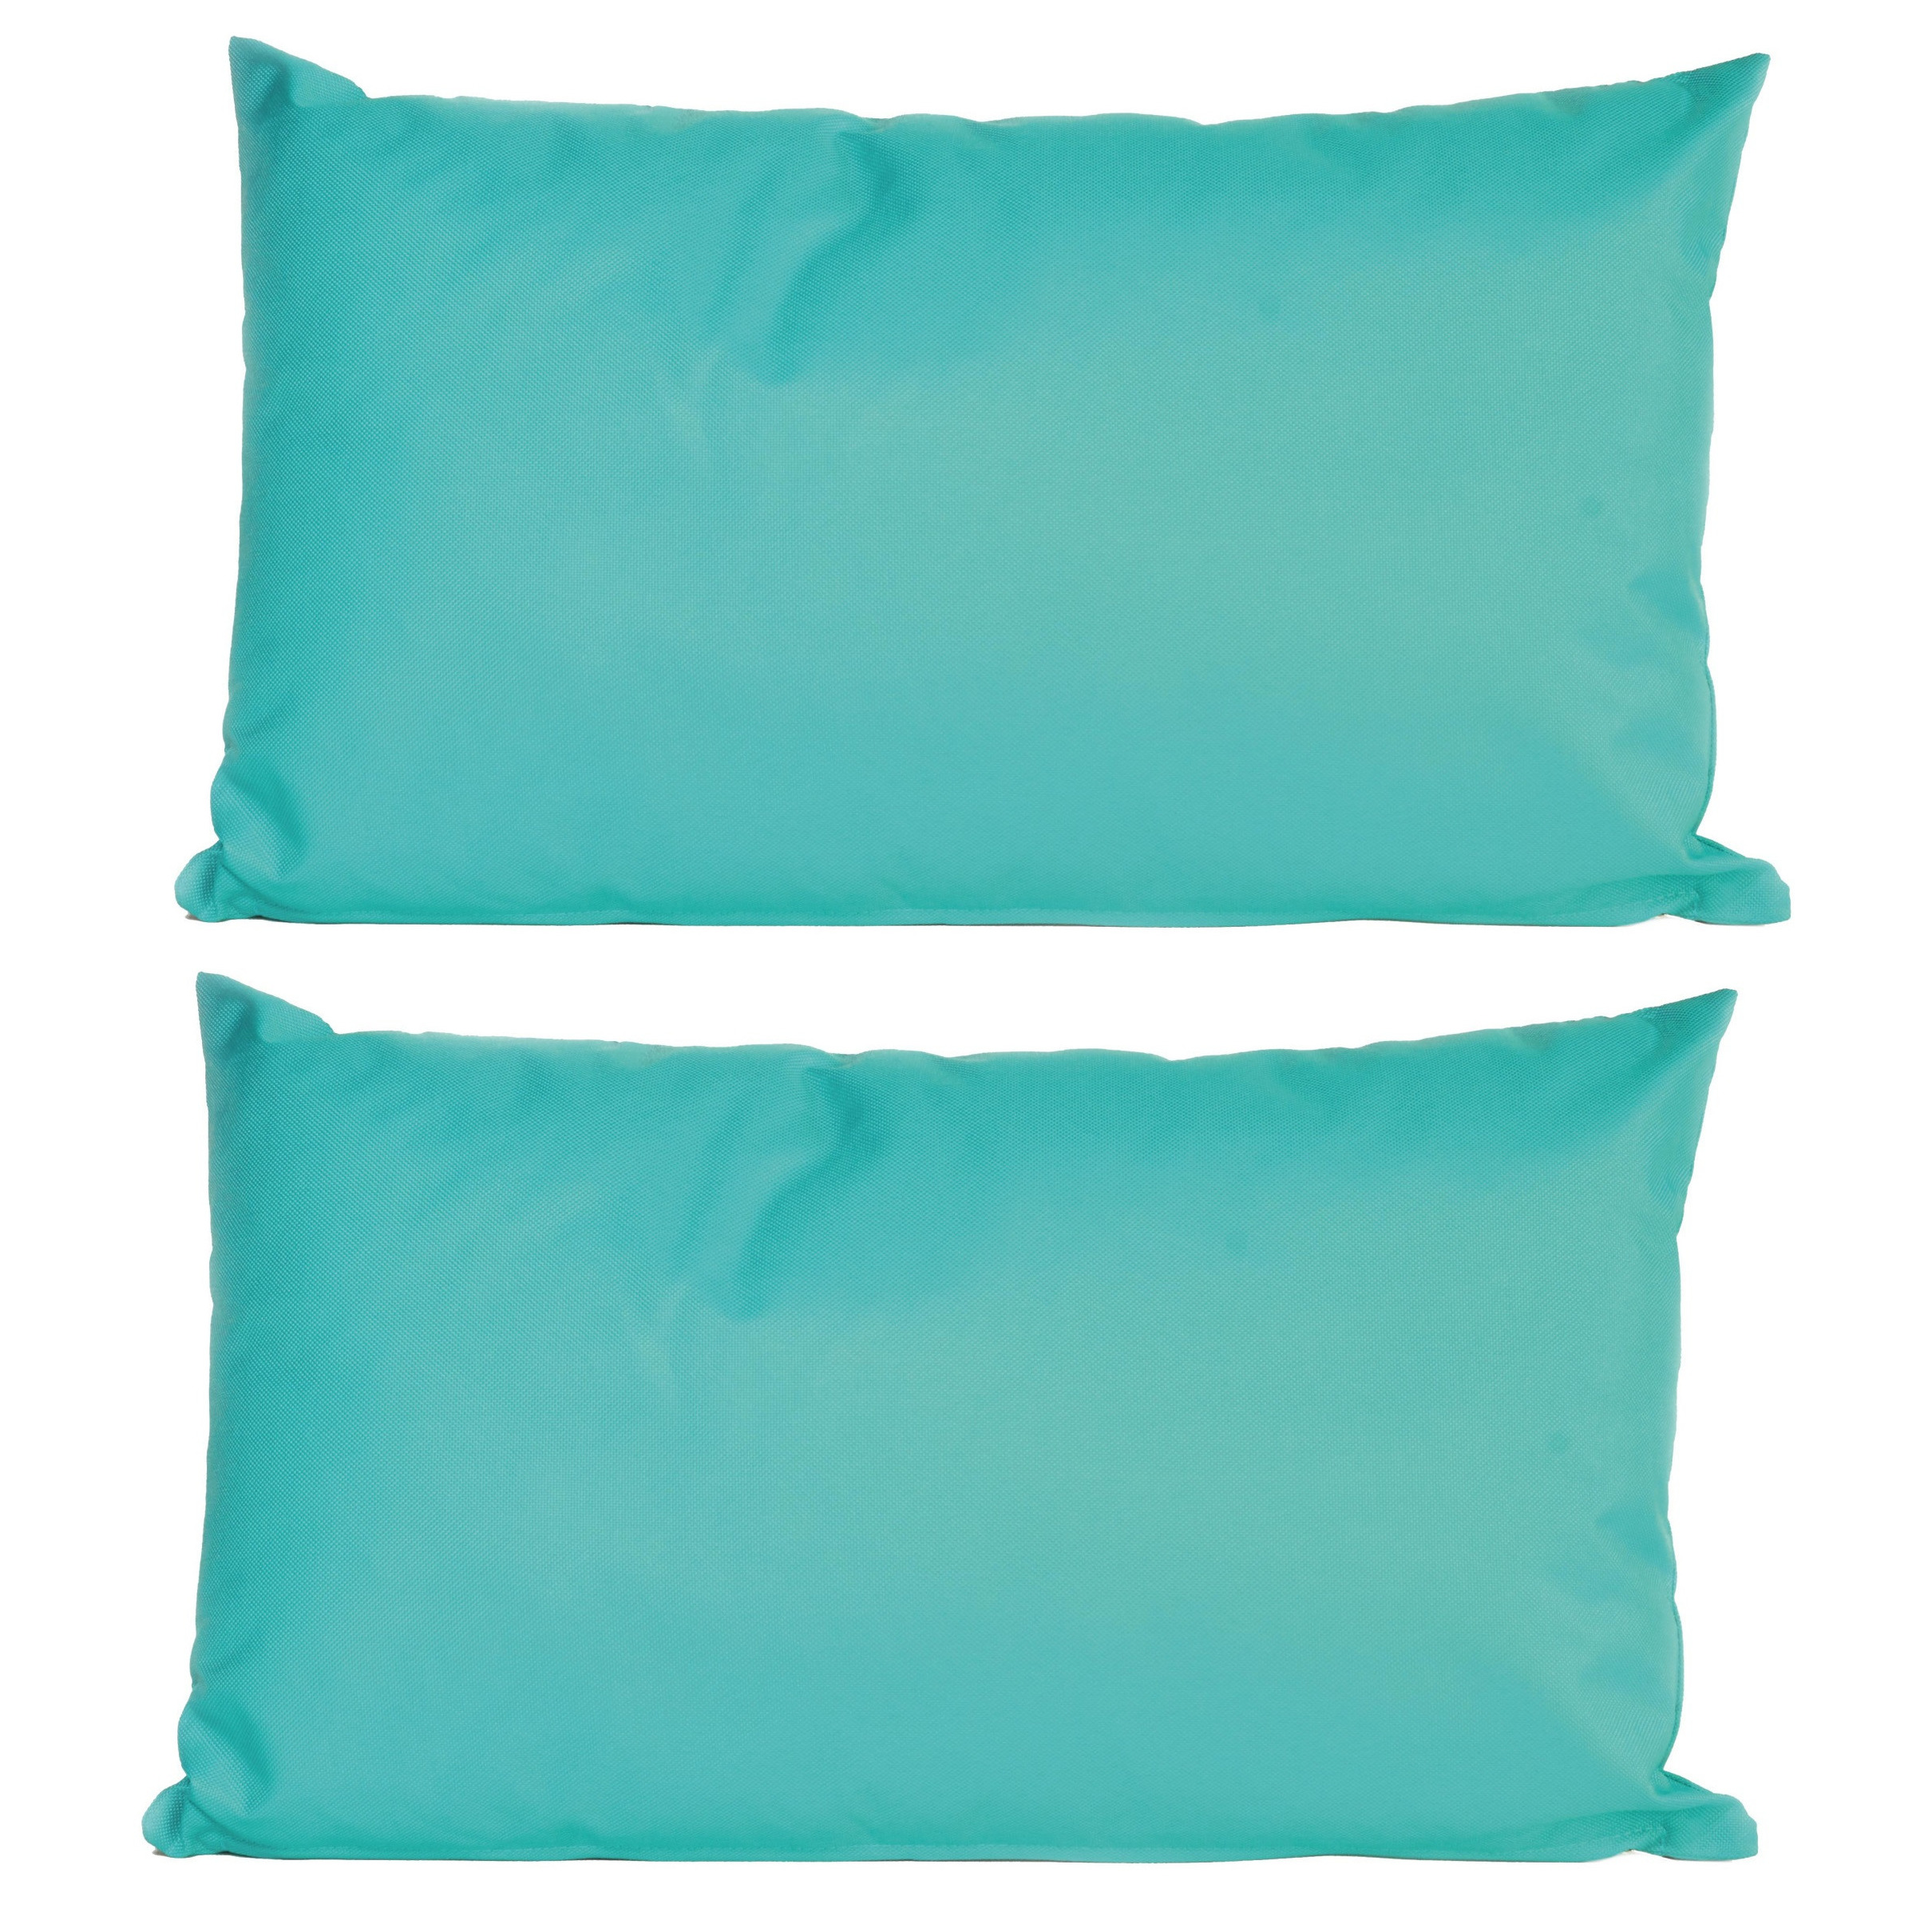 6x Bank-sier kussens voor binnen en buiten in de kleur aqua blauw 30 x 50 cm